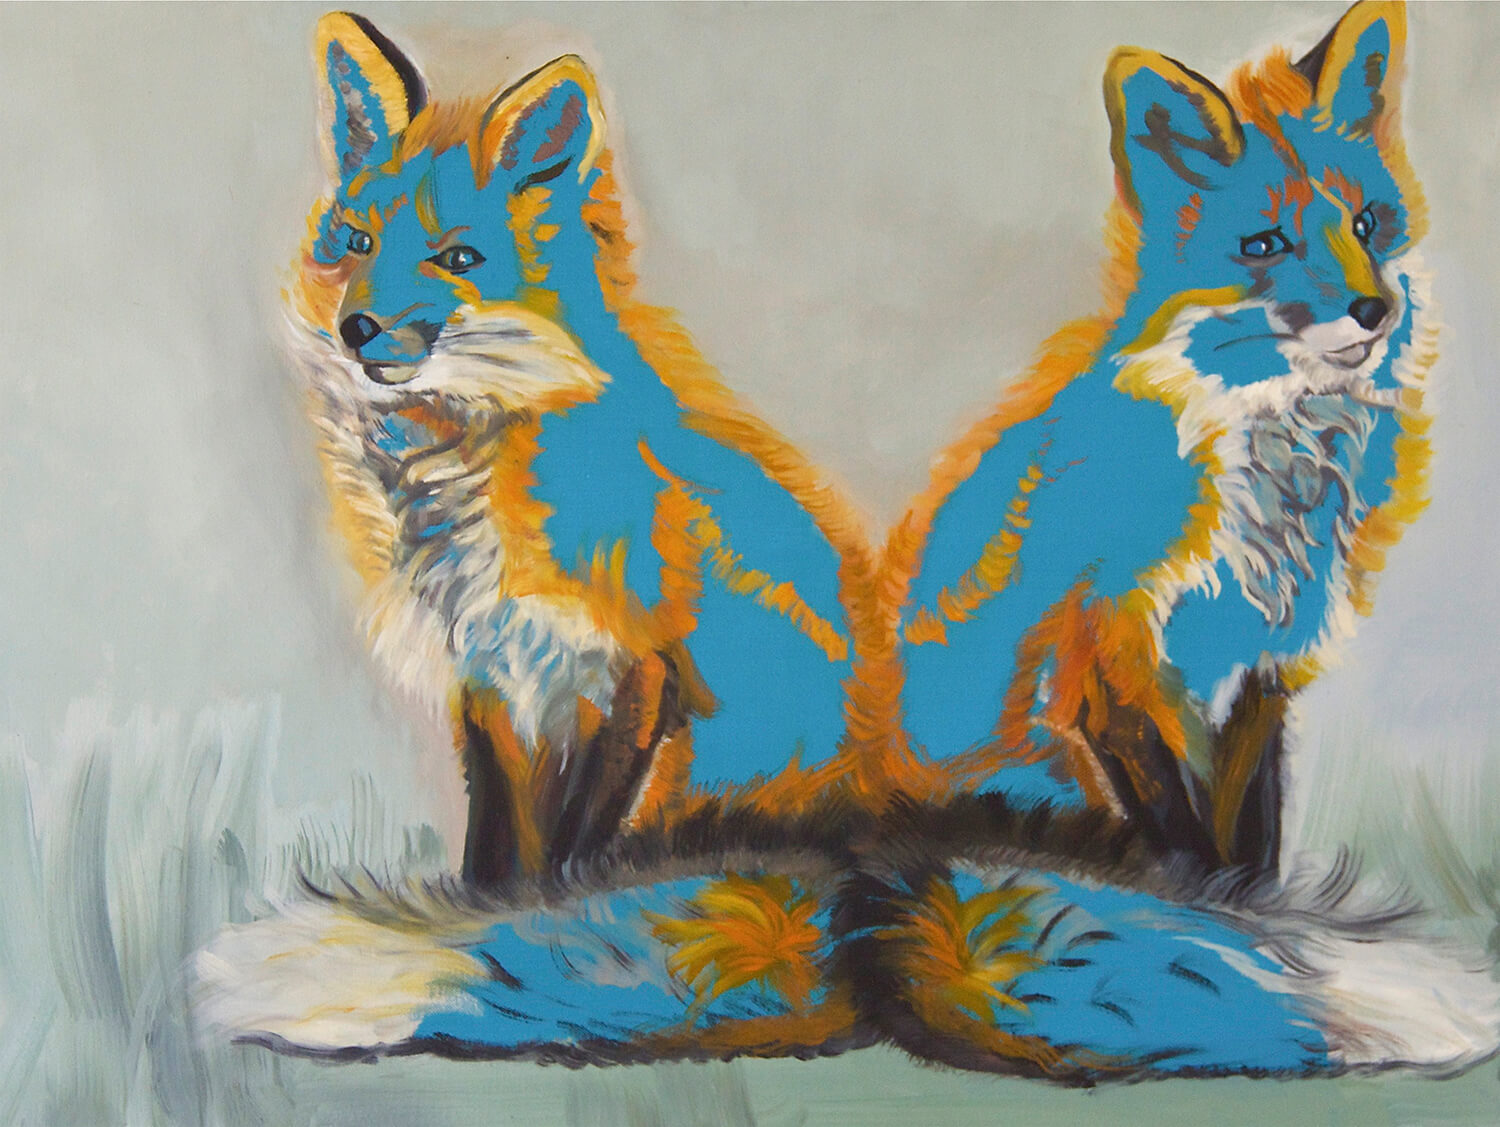 Heidrun Rueda, Janusfuchs blau, 2014, Öl auf Leinwand, 60 x 80 cm